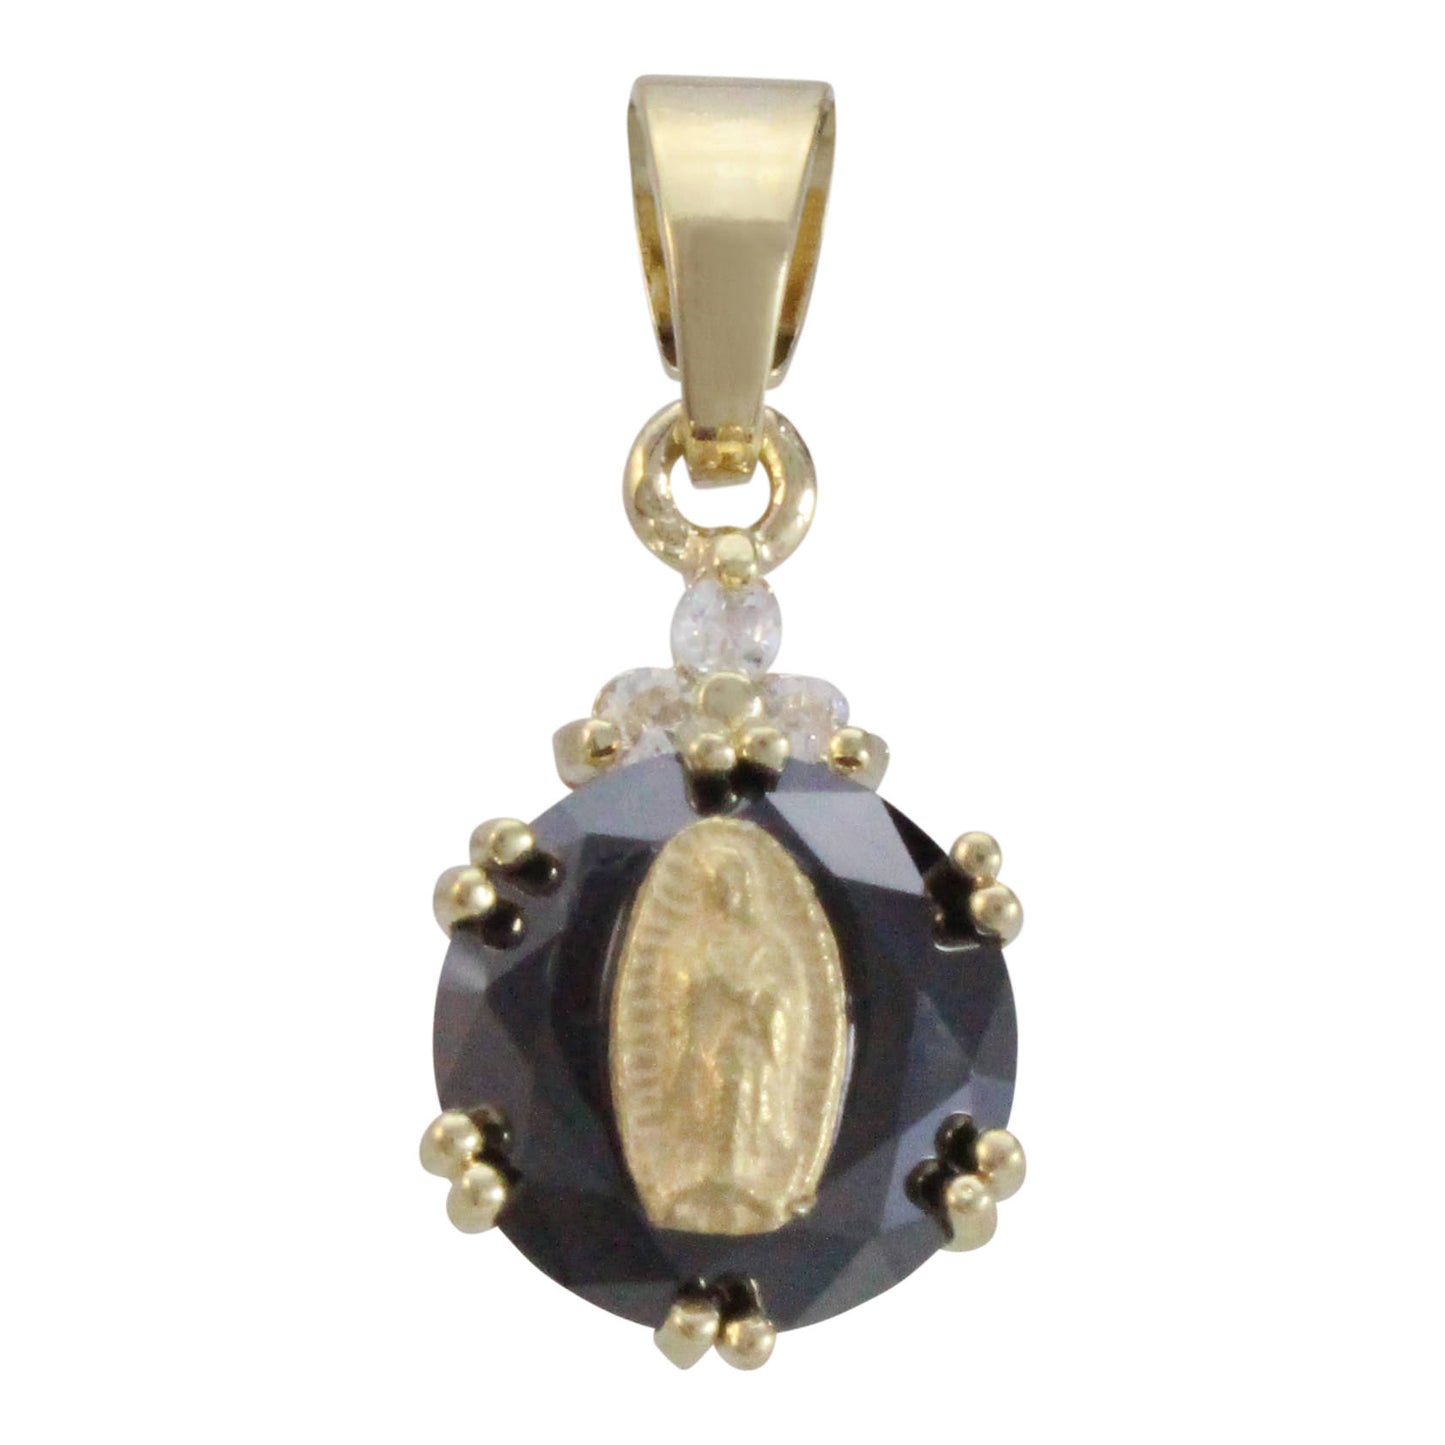 Dije de la Virgen de Guadalupe cristales top, en chapa de oro 14K y cristal de Zircon